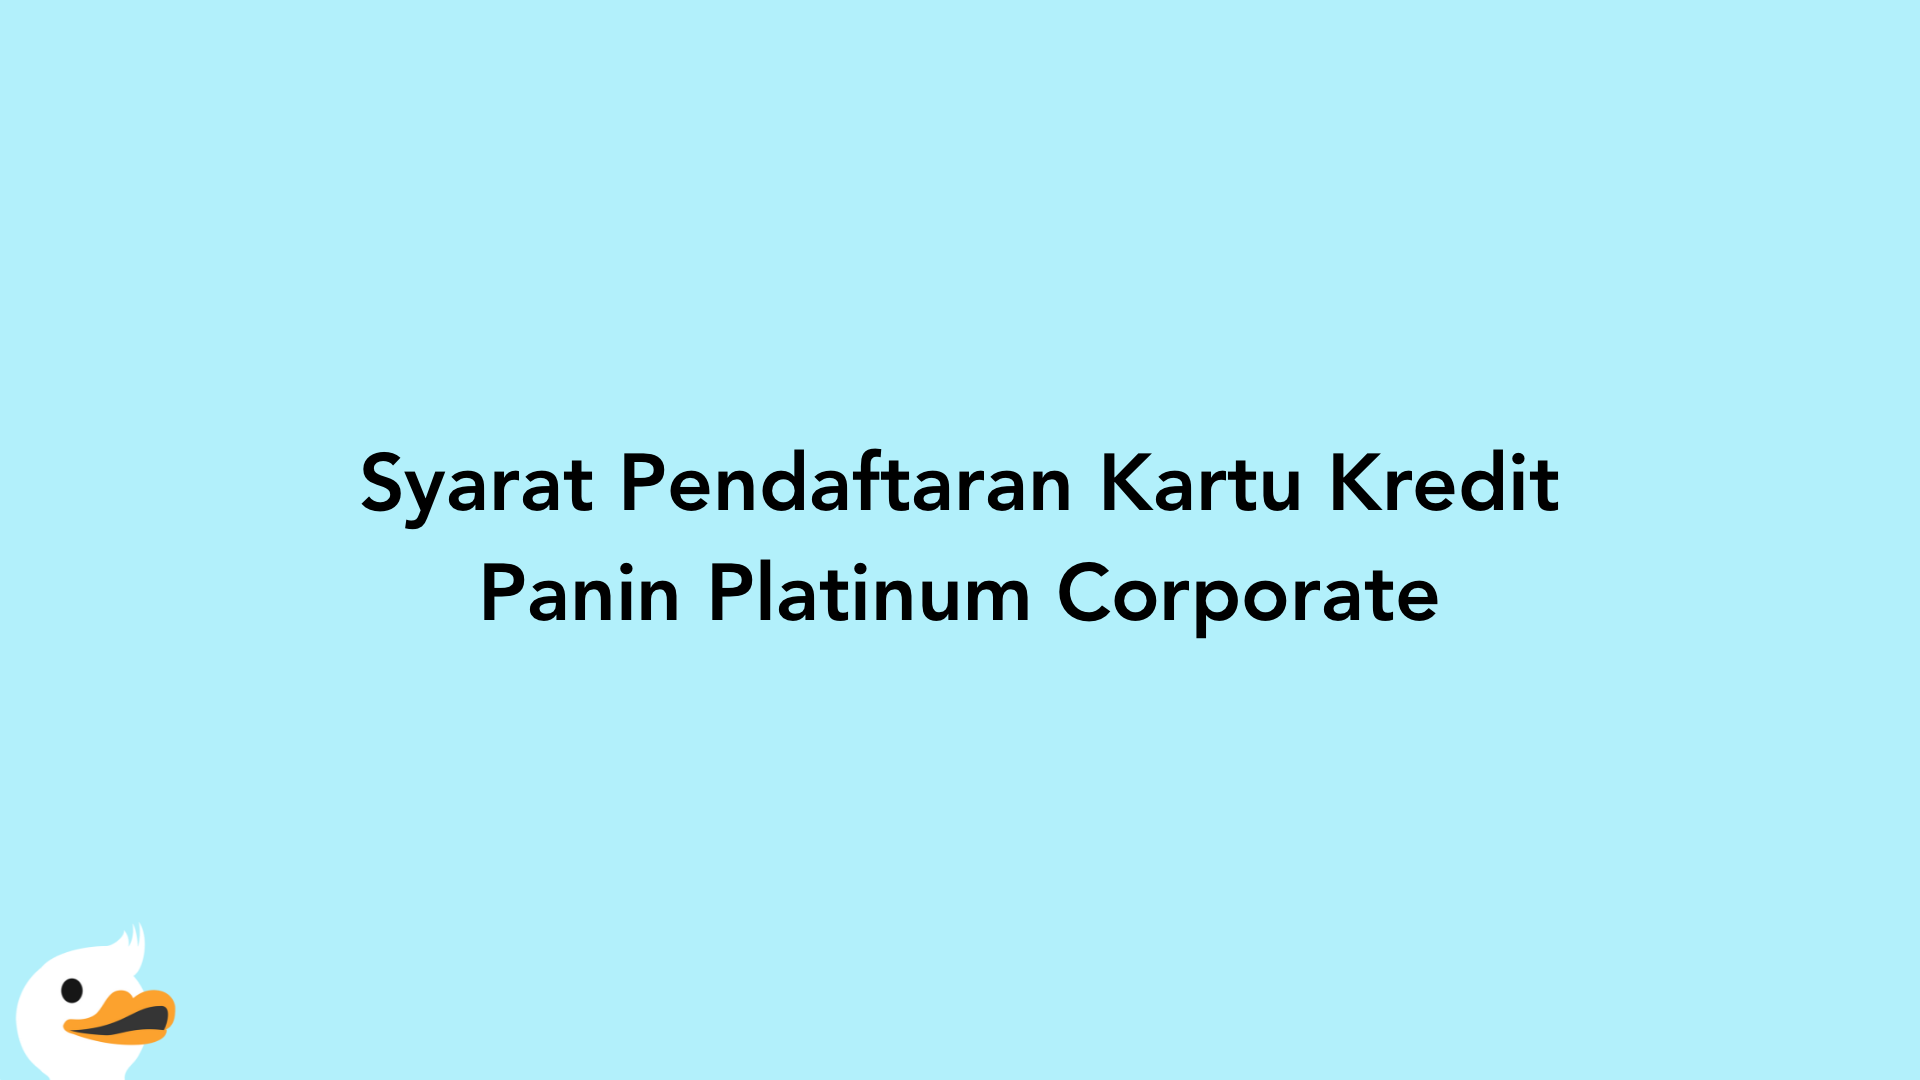 Syarat Pendaftaran Kartu Kredit Panin Platinum Corporate